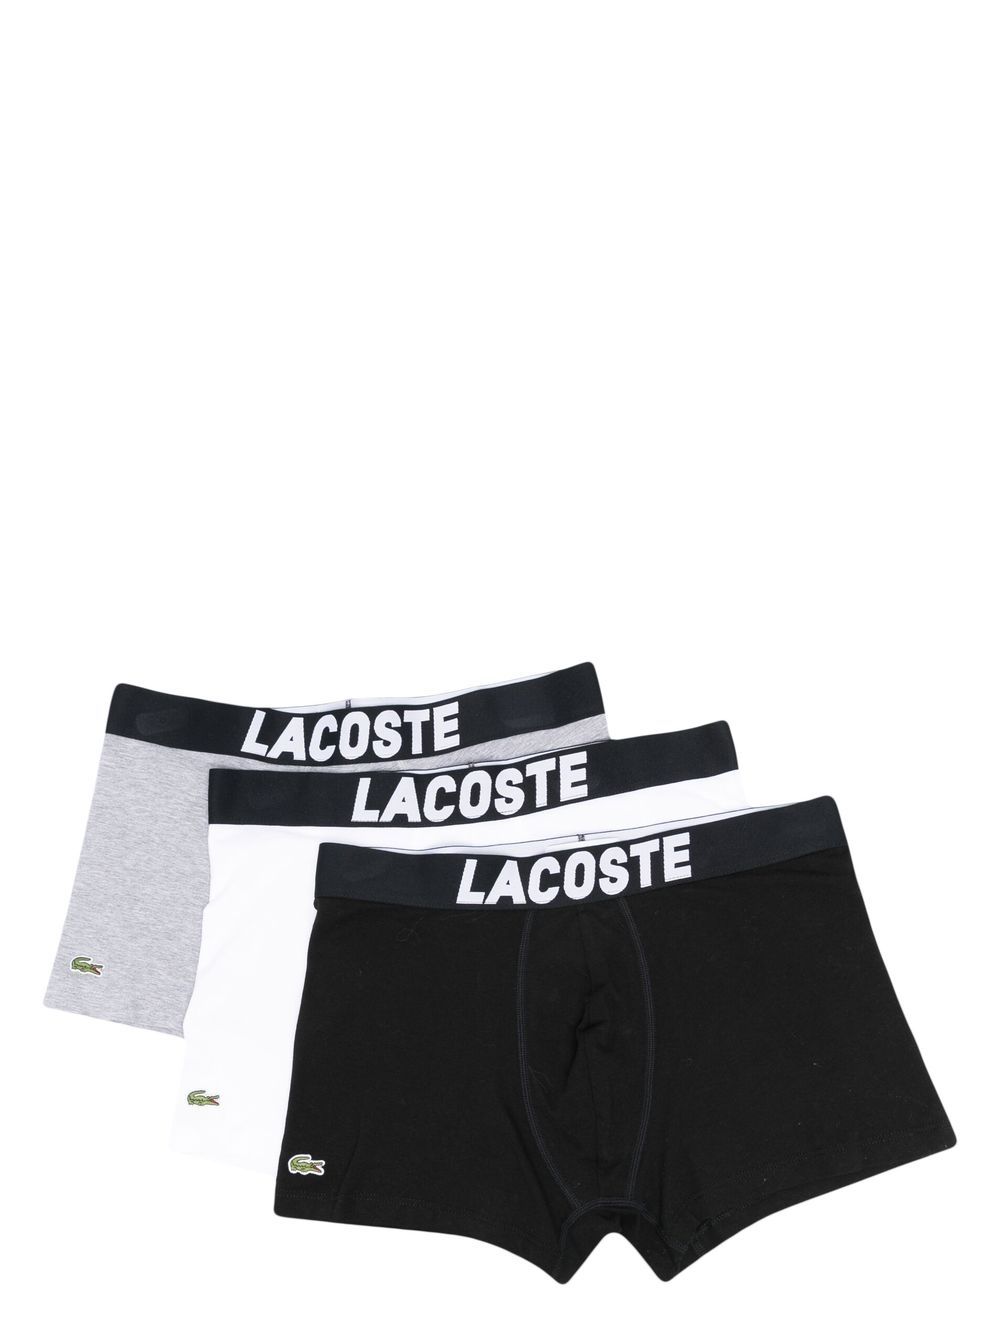 Lacoste logo-waistband boxers set of 3 - Nero